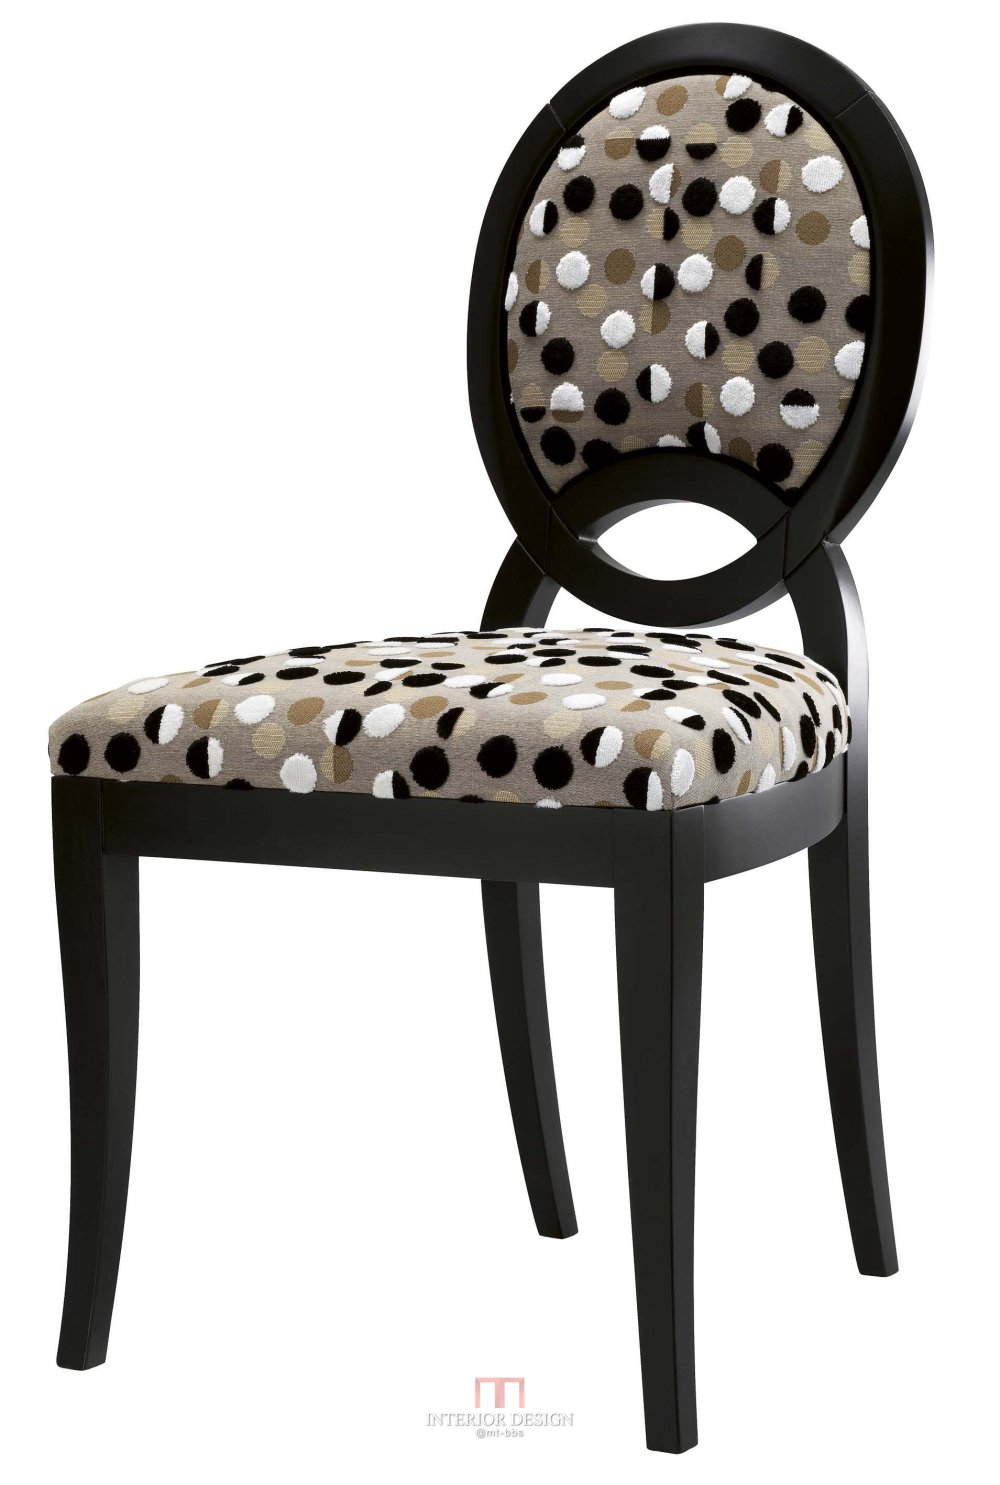 分享法国品牌Collinet 的几把椅子_1810 3-4.jpg